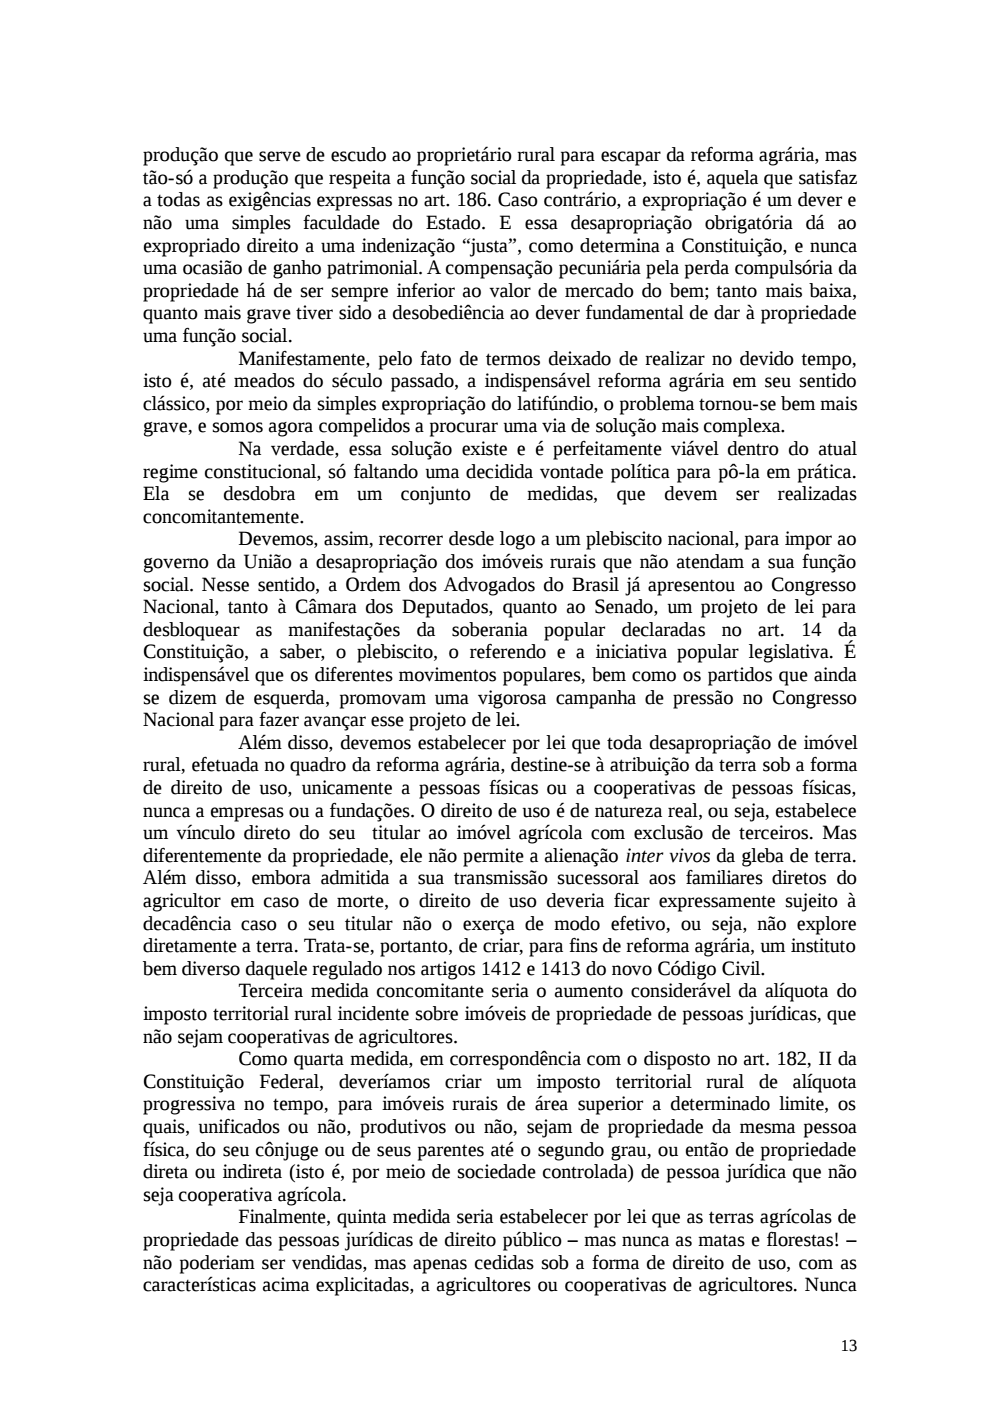 Page 13 from Relatório final da comissão